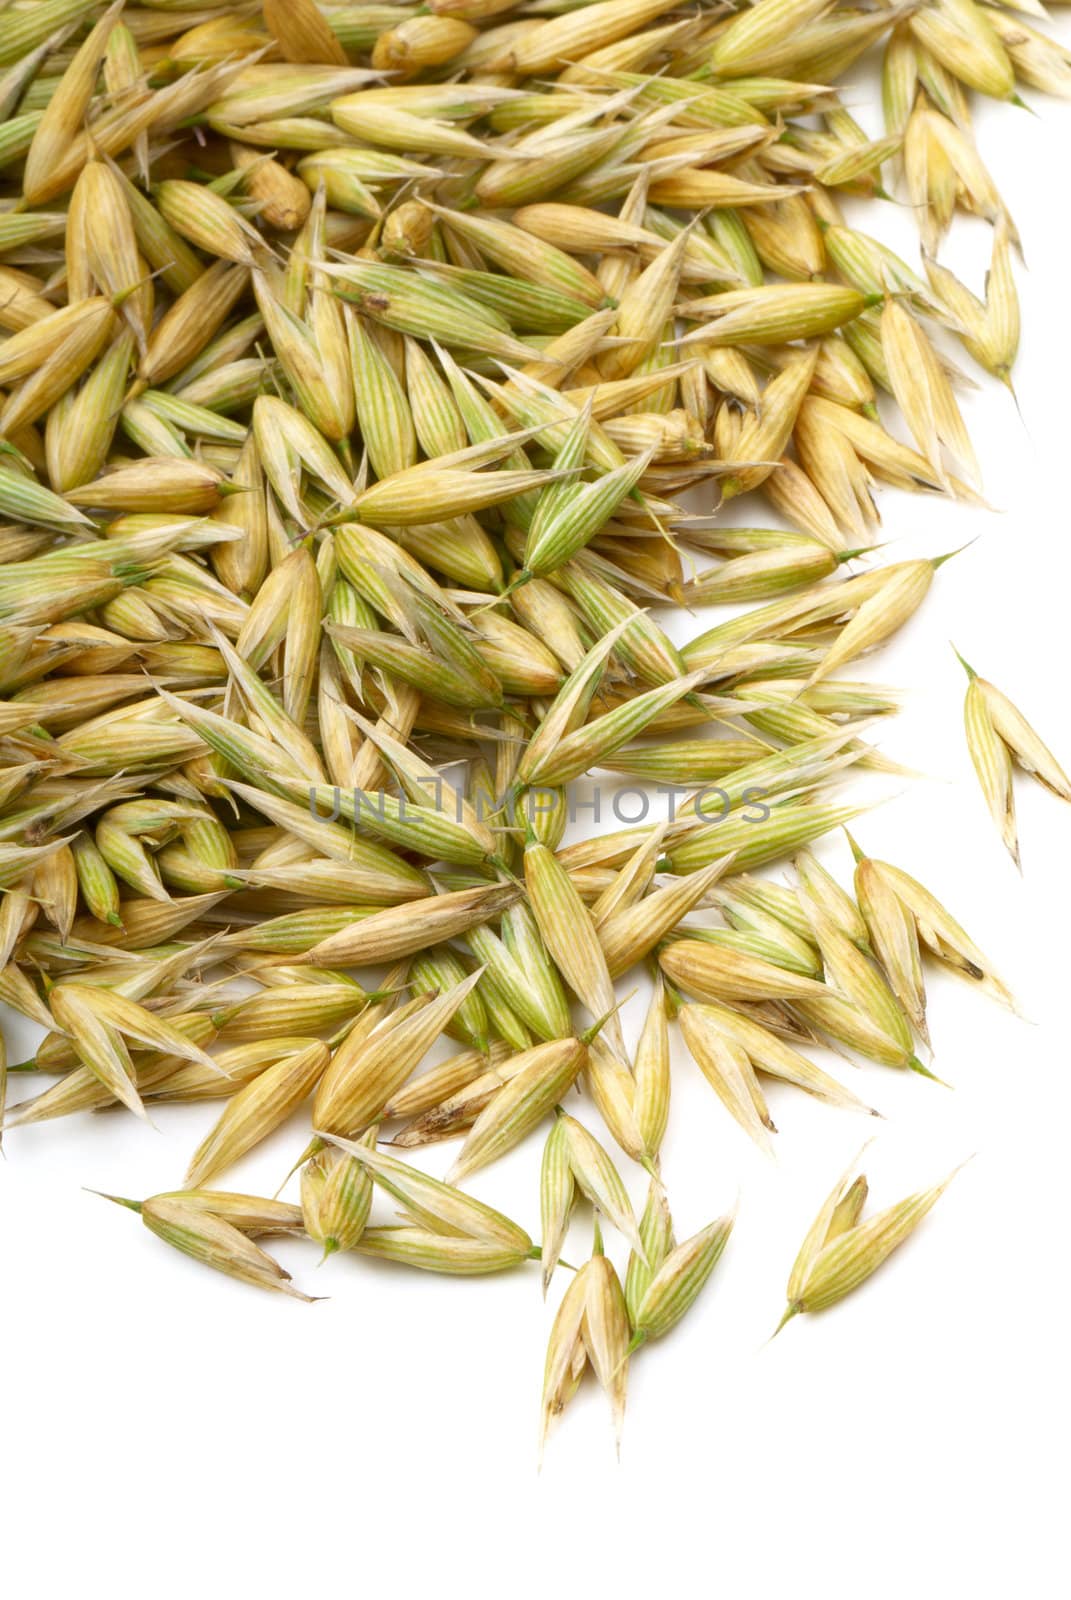 Seeds of oats. Macro